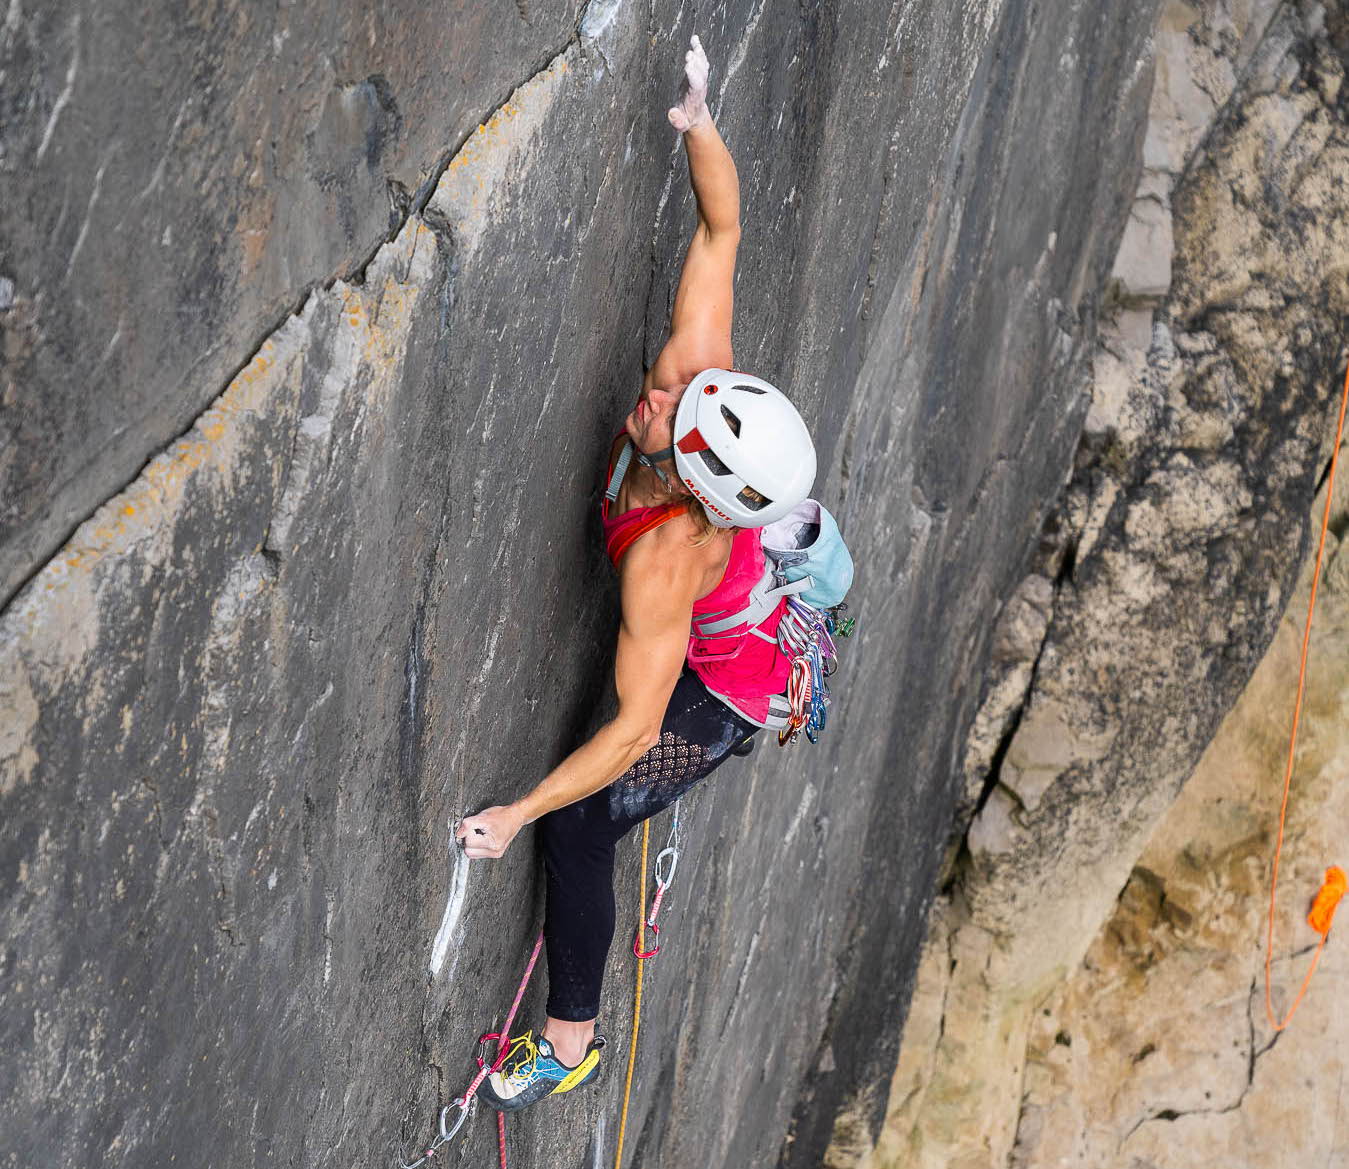 Madeleine "Maddy" Cope, Mammut Climbing Athlete